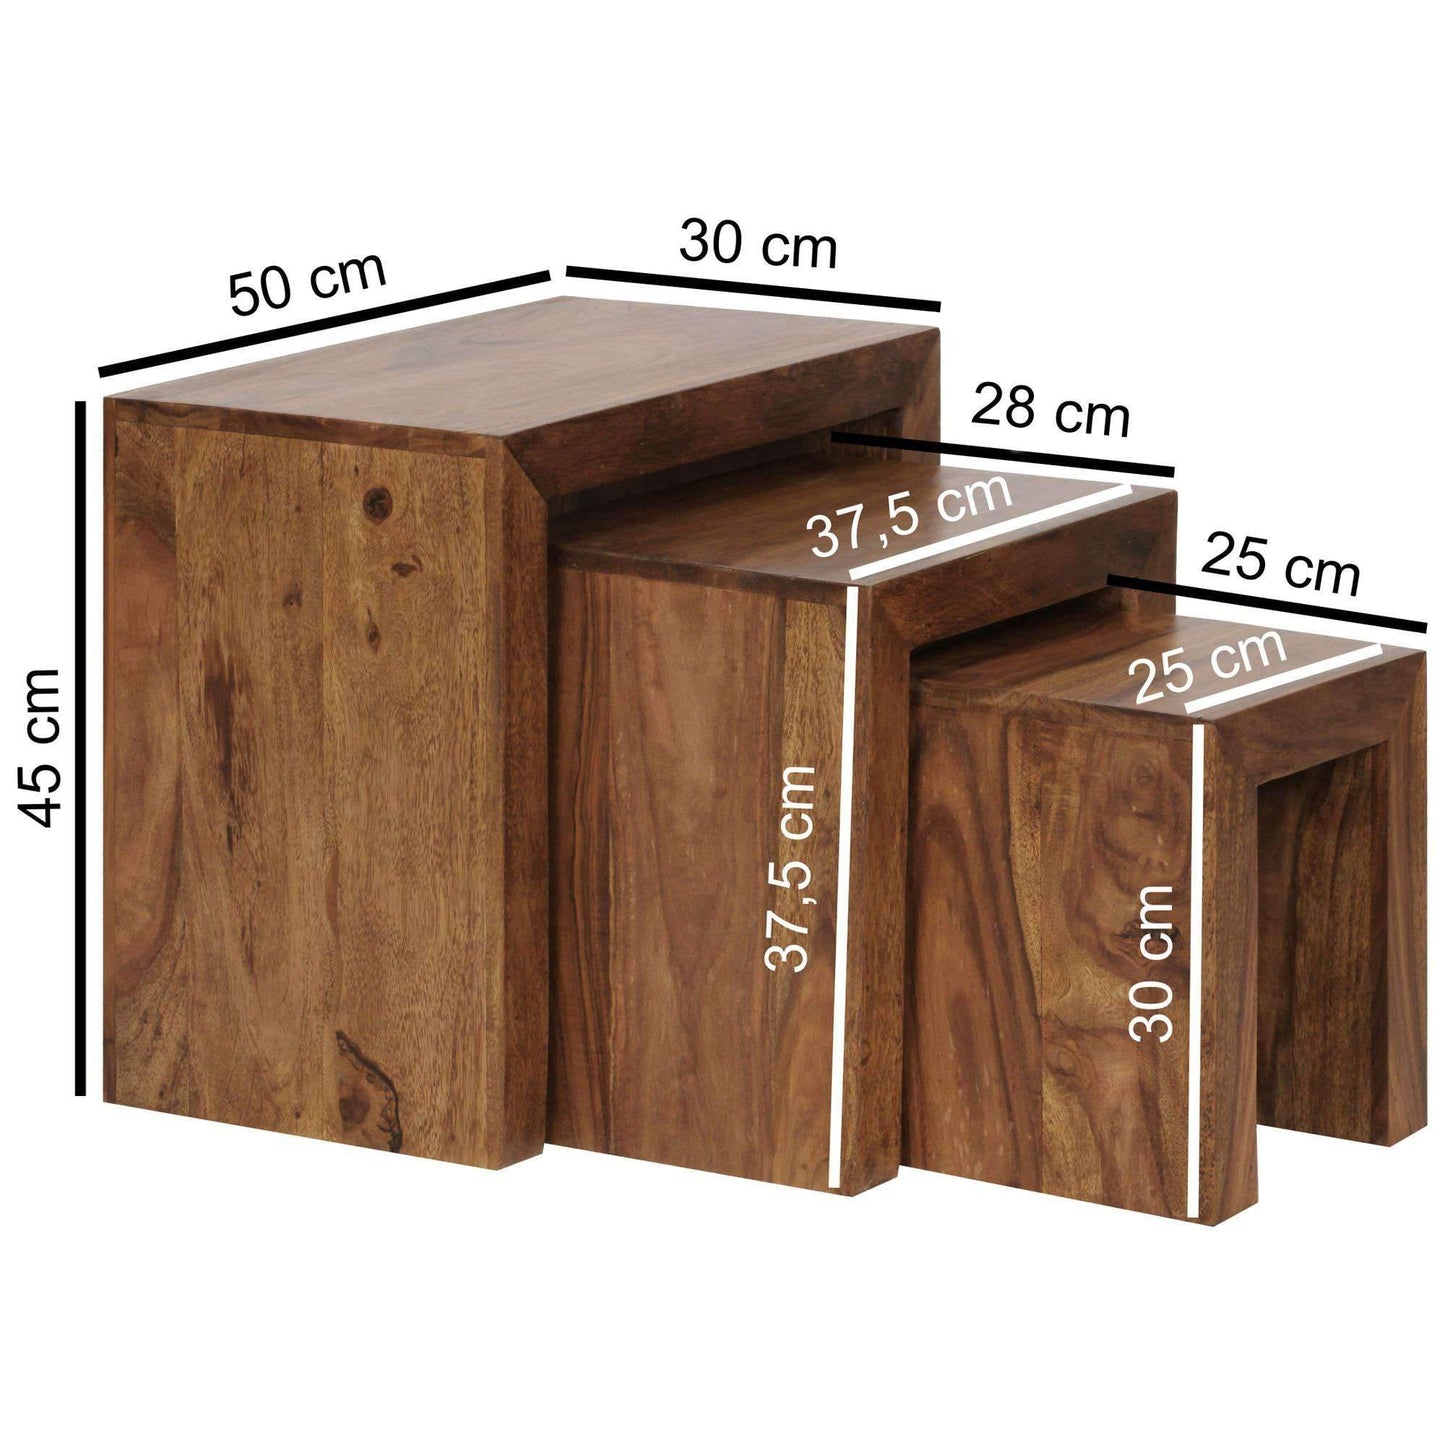 Nancy's Rosehill Table d'appoint en bois massif, ensemble de 3 - Tables d'appoint en sheesham - Table - Tables d'appoint